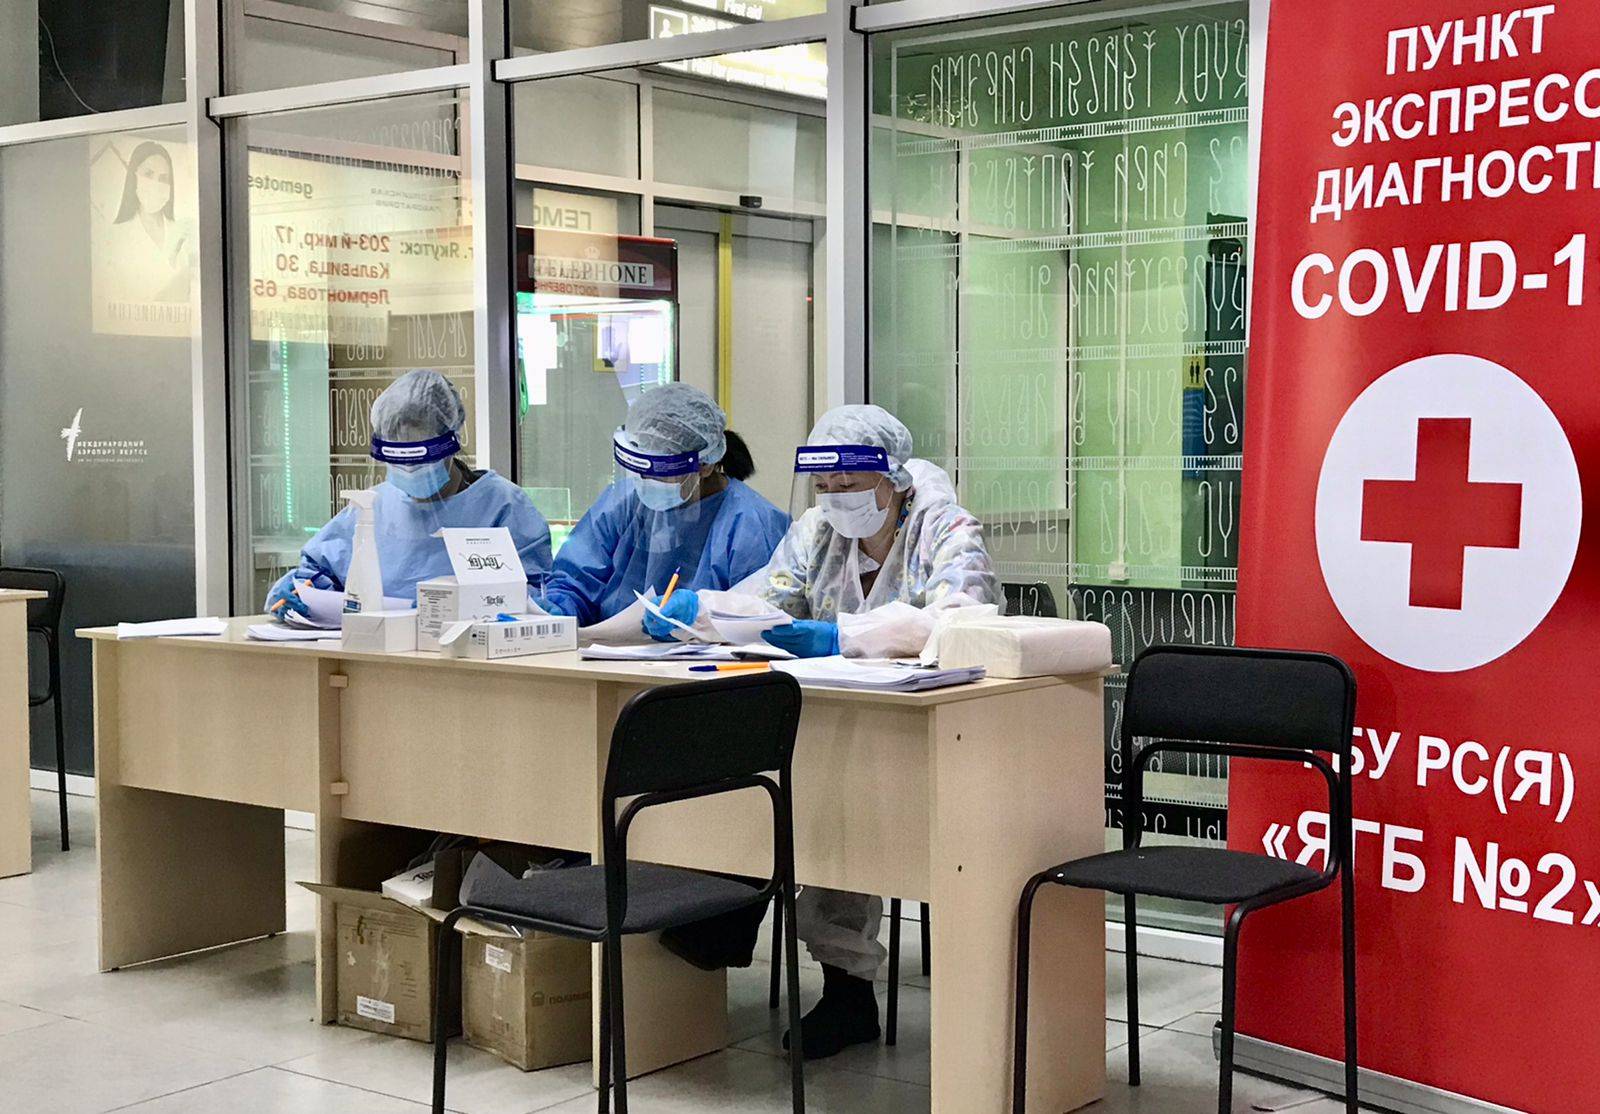 Сообщение о массовом выявлении больных COVID-19 опровергли в аэропорту Якутска